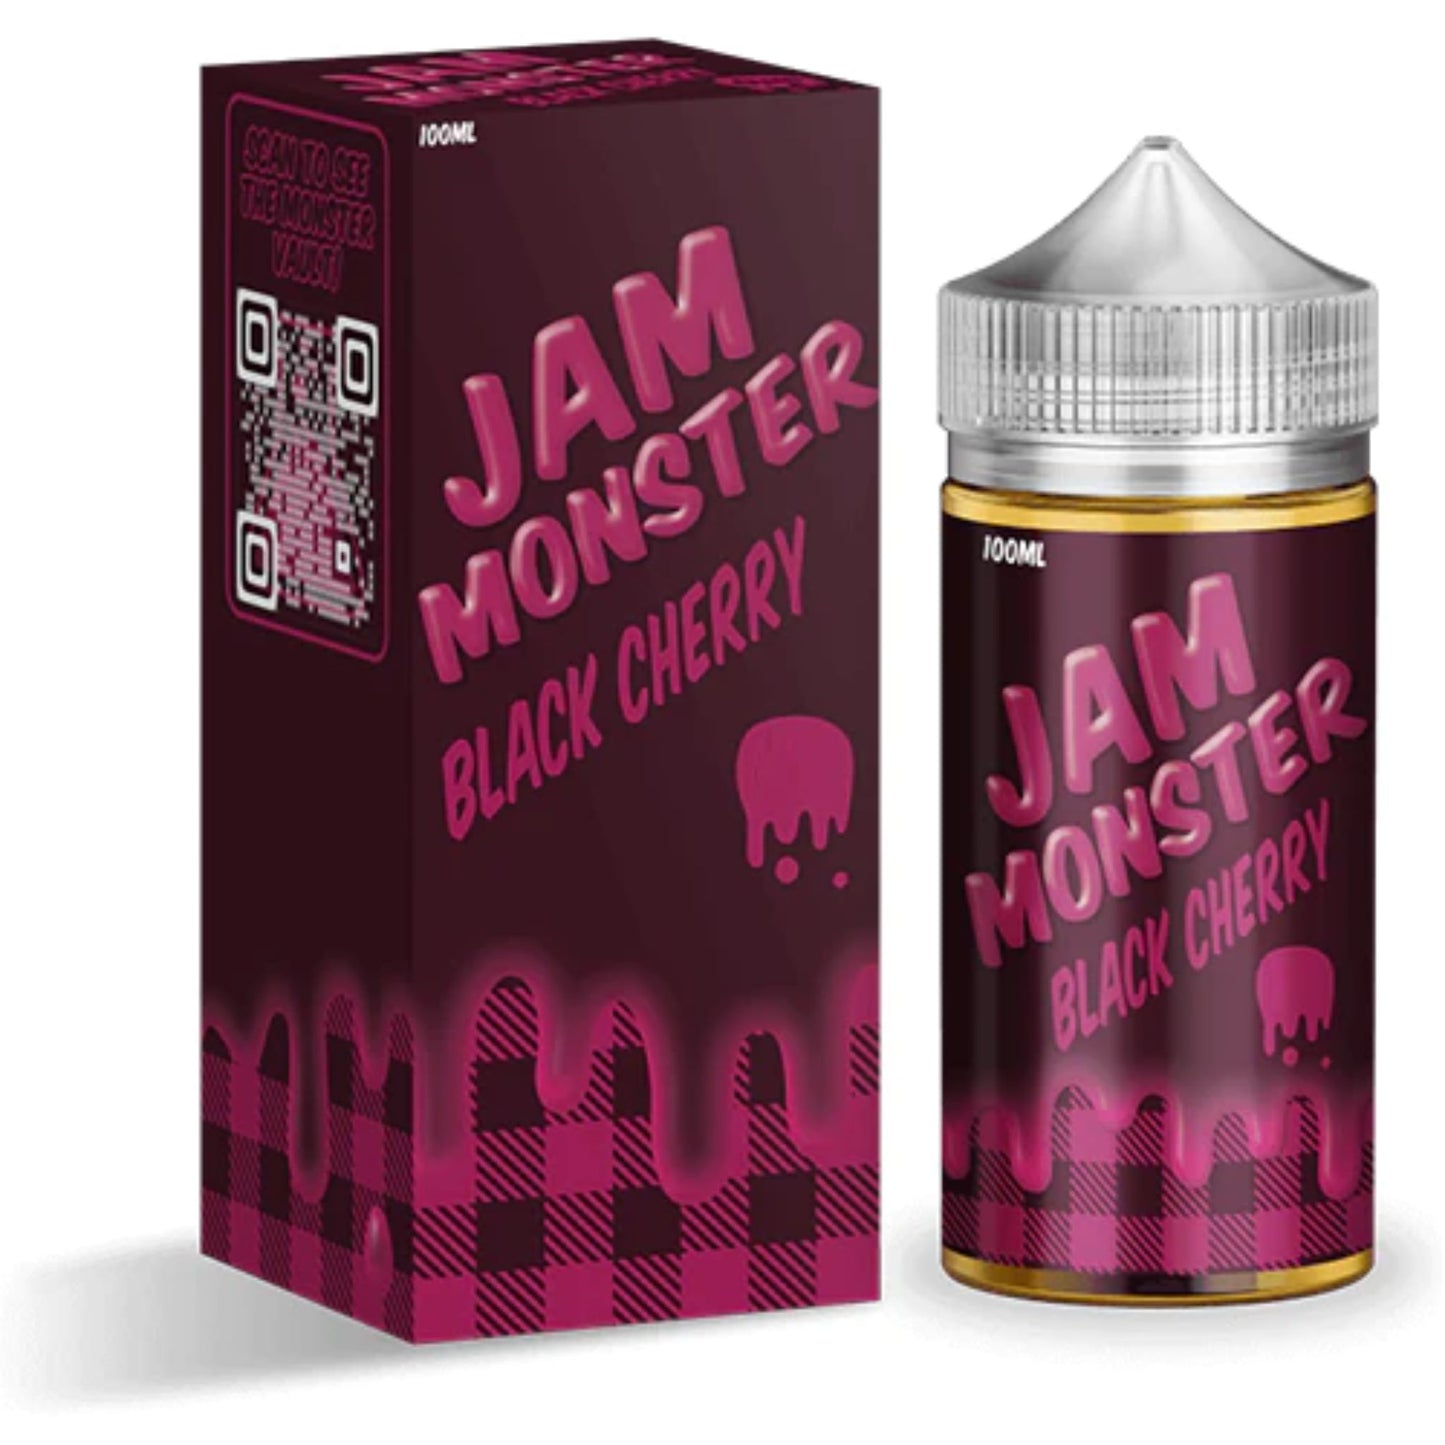 jam monster black cherry e-liquid 100ml bottle and box